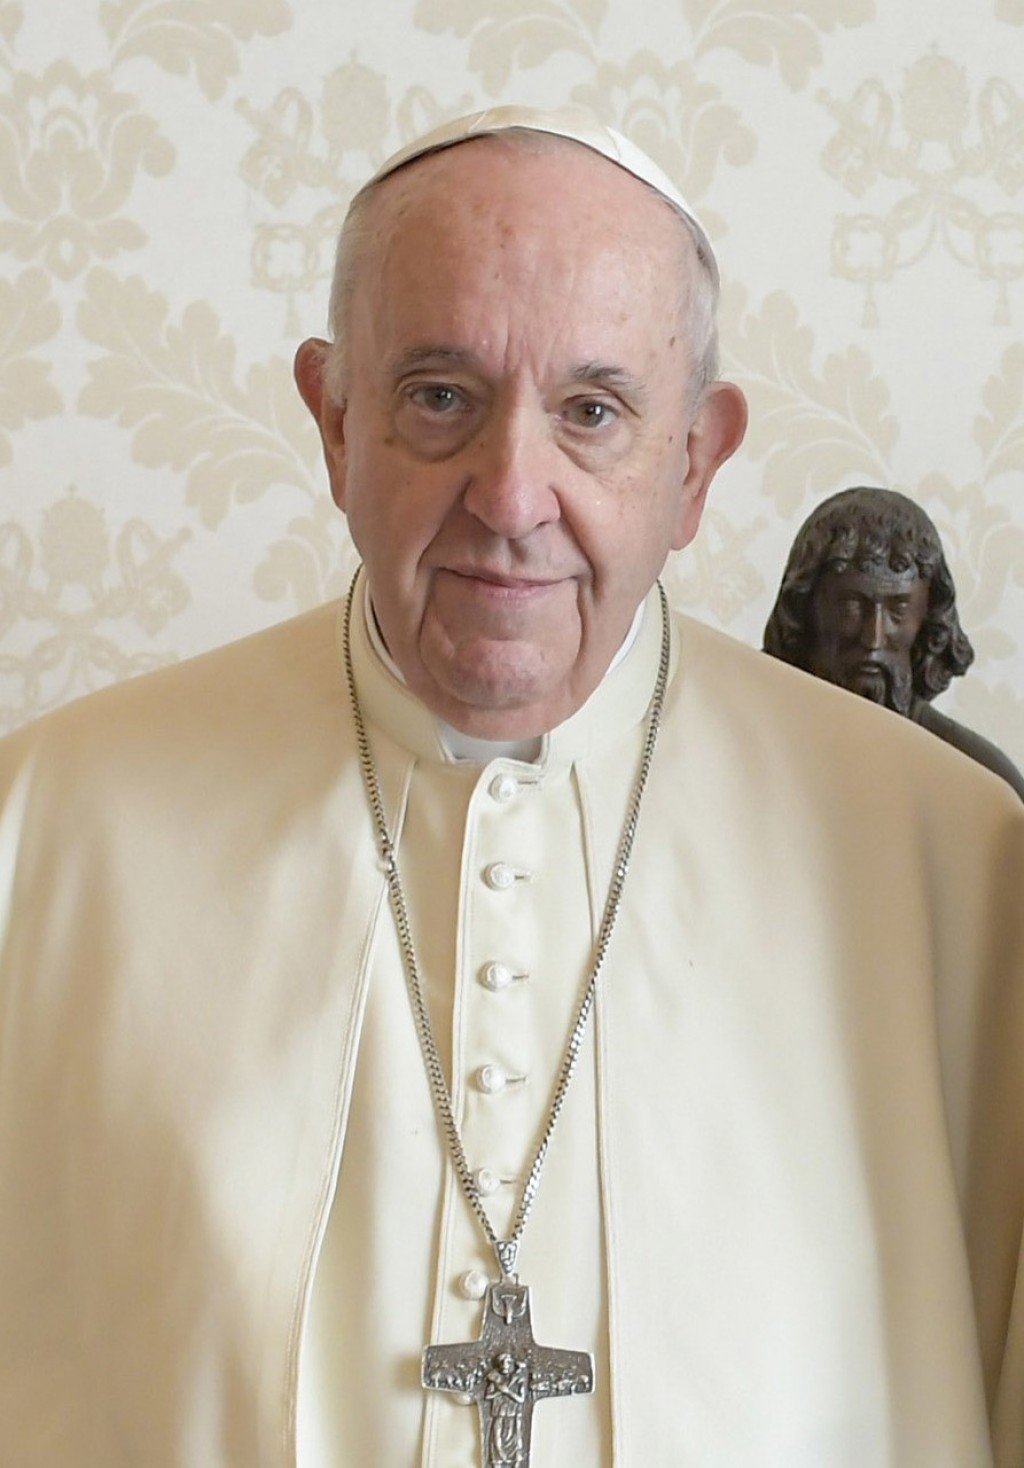 El Papa Francisco aviva especulaciones sobre su futuro en el pontificado